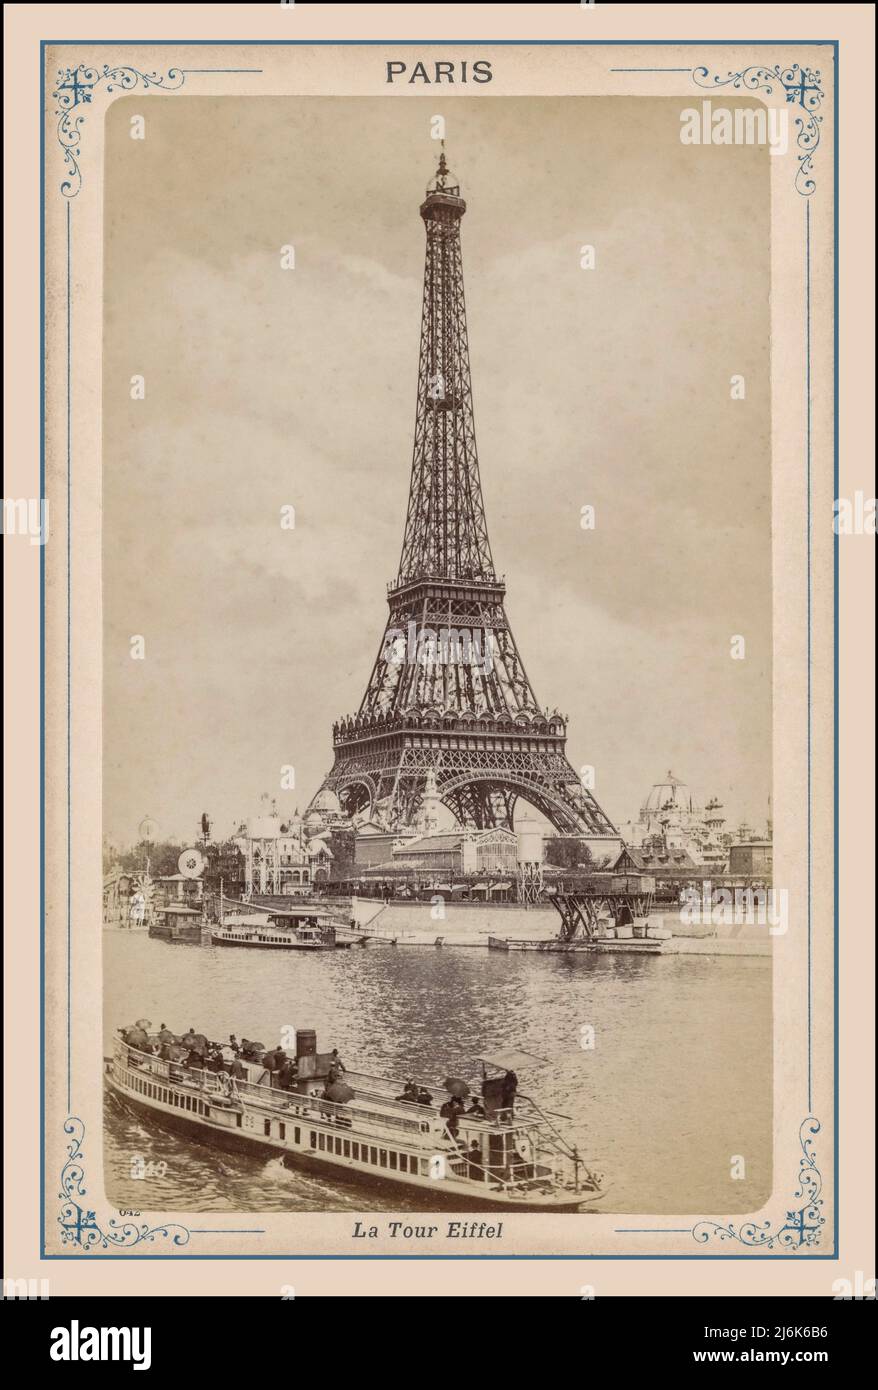 PARIS Vintage Postkarte 1900er Jahre s&W Retro Eiffelturm und seine mit Stadtrundfahrt Boot im Vordergrund Paris Frankreich. Postkartenansicht des Eiffelturms La Tour Eiffel Paris Fotografin Etienne Neurdein Stockfoto